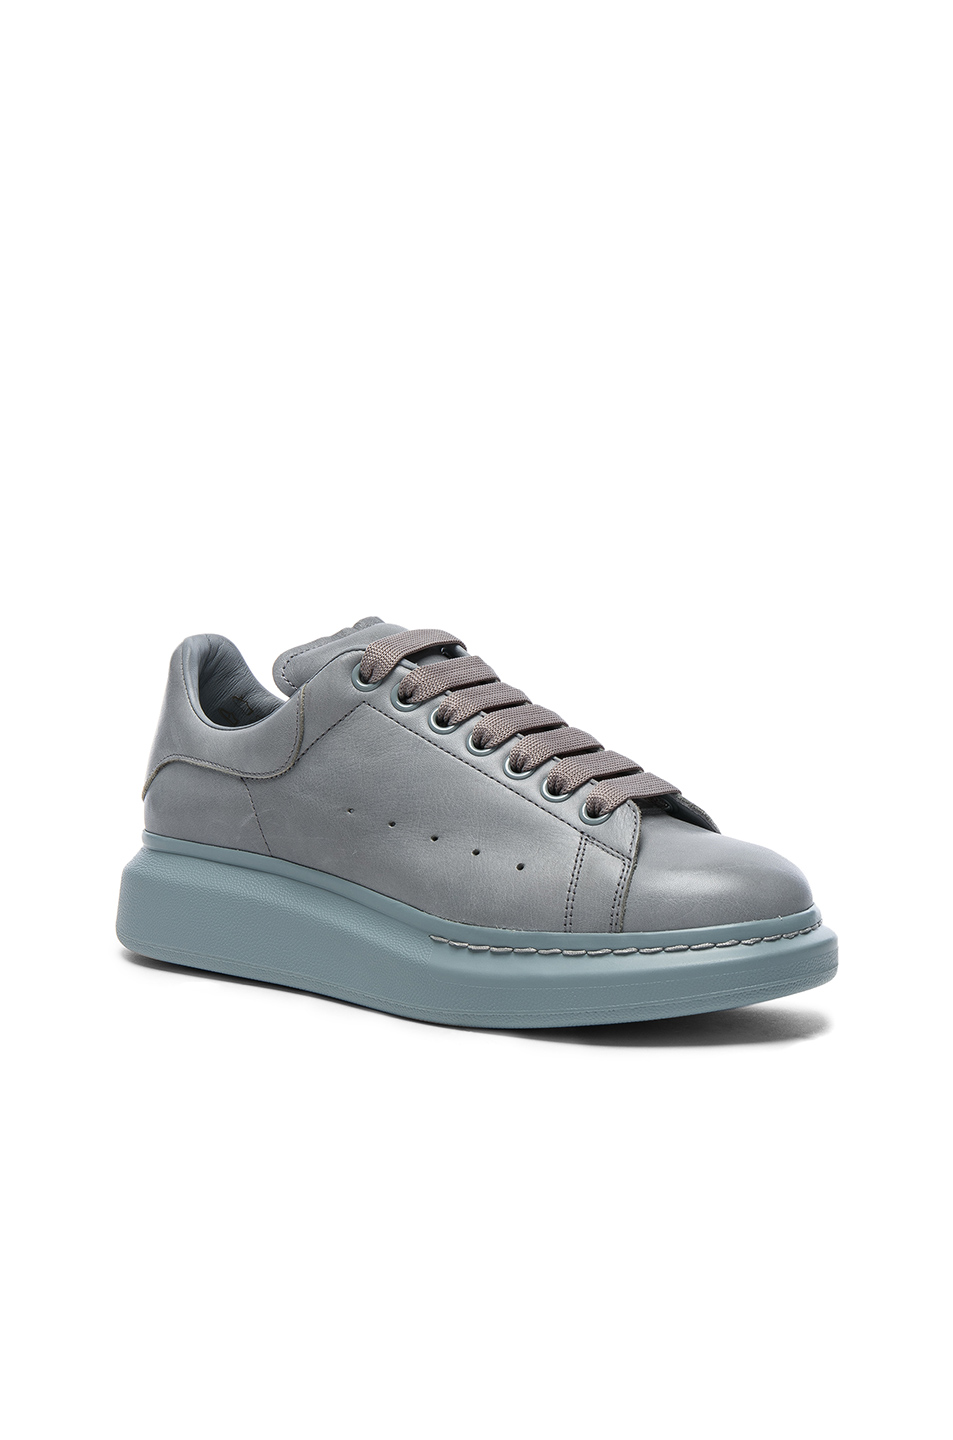 alexander mcqueen gray sneakers